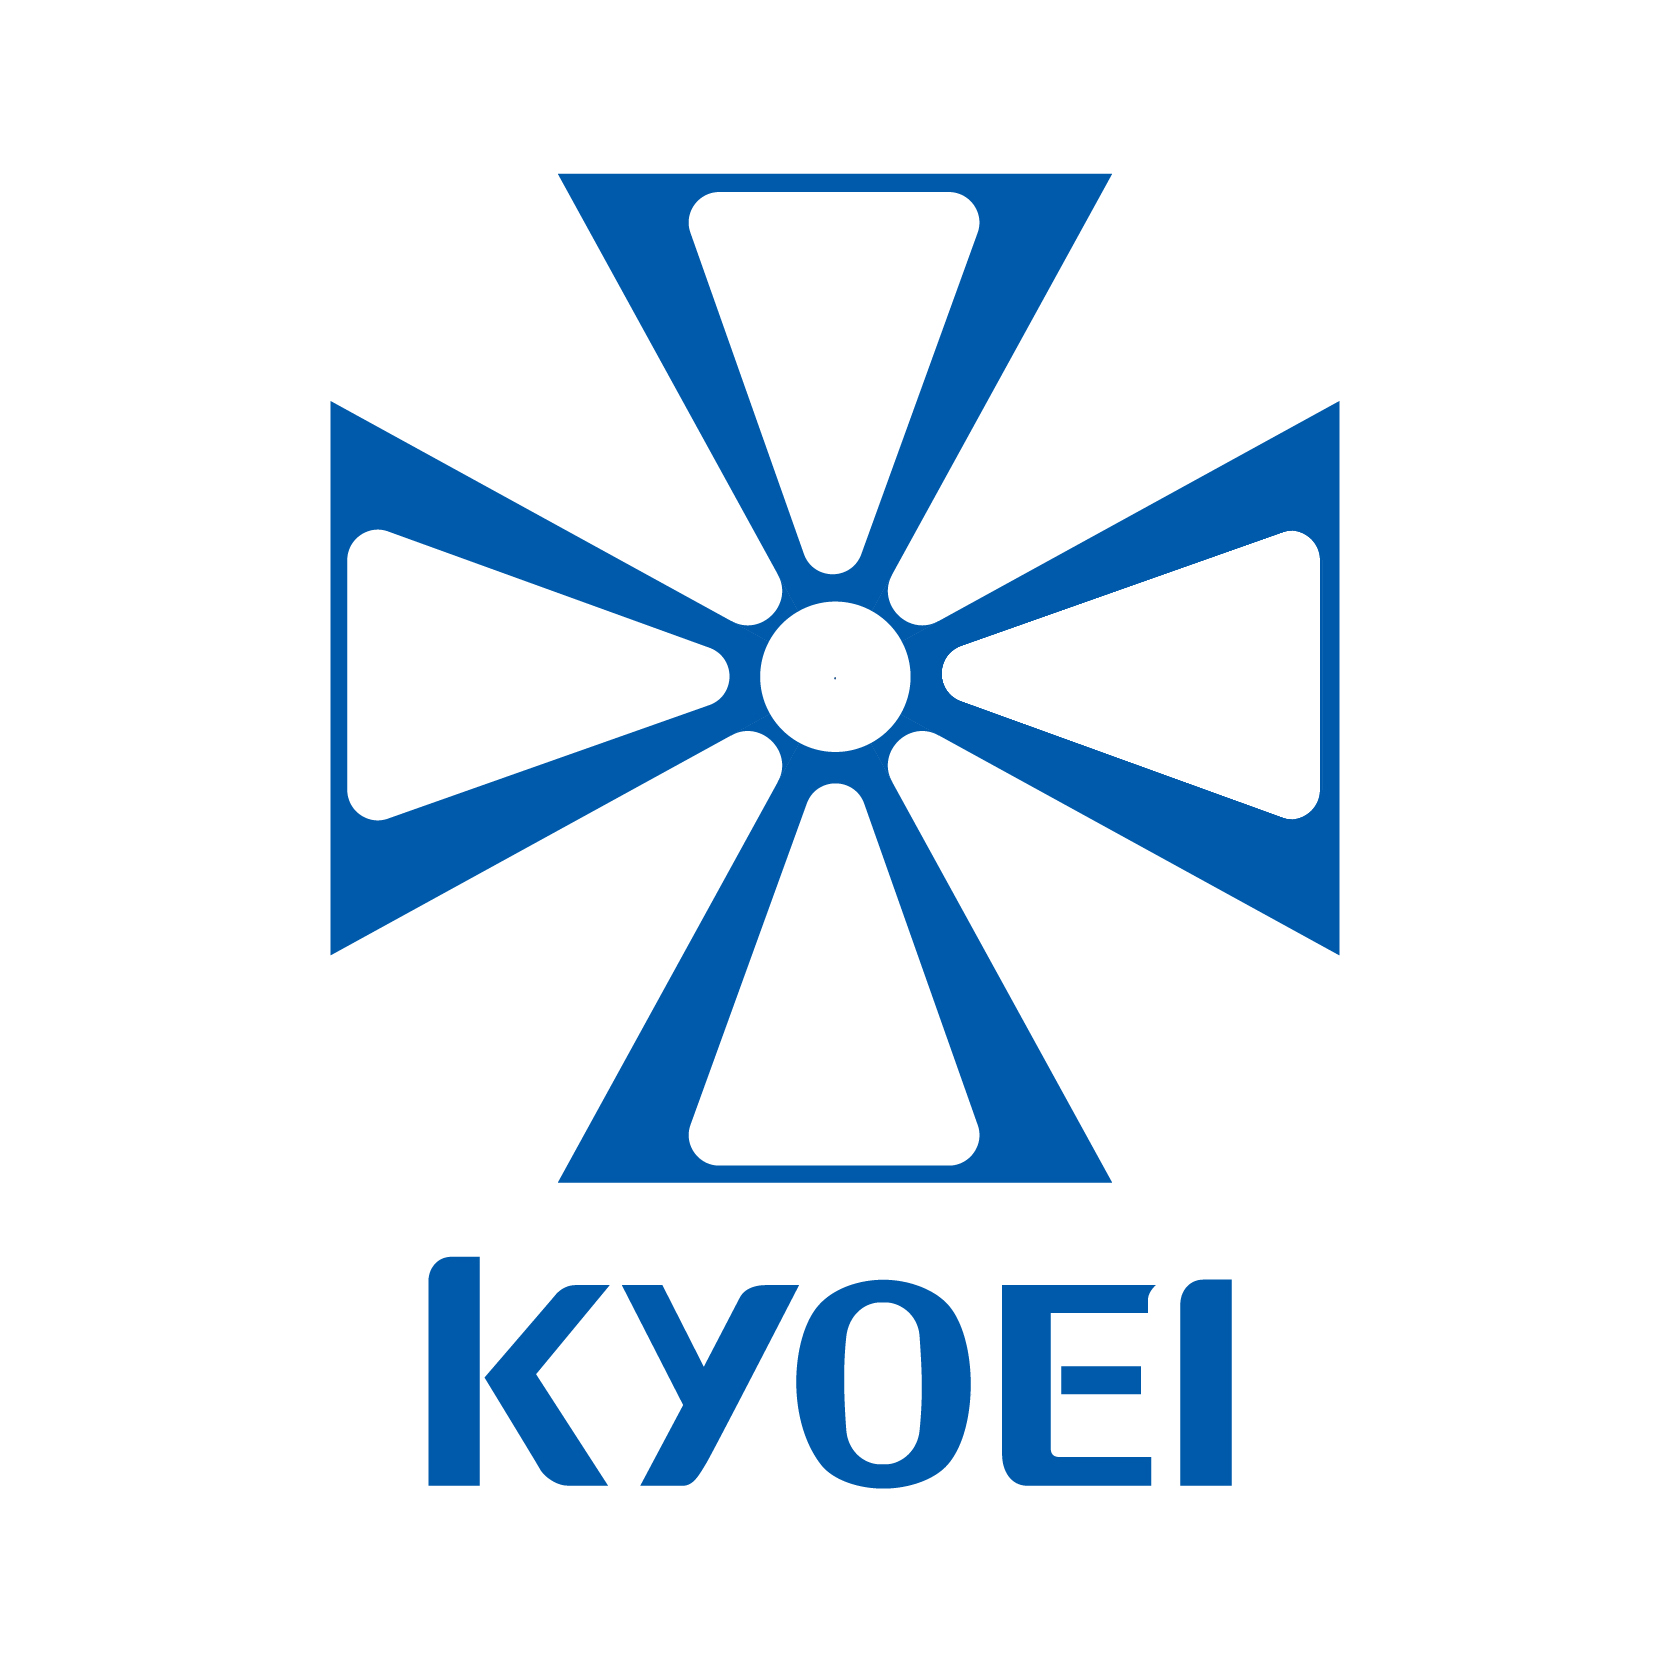 Kyoei